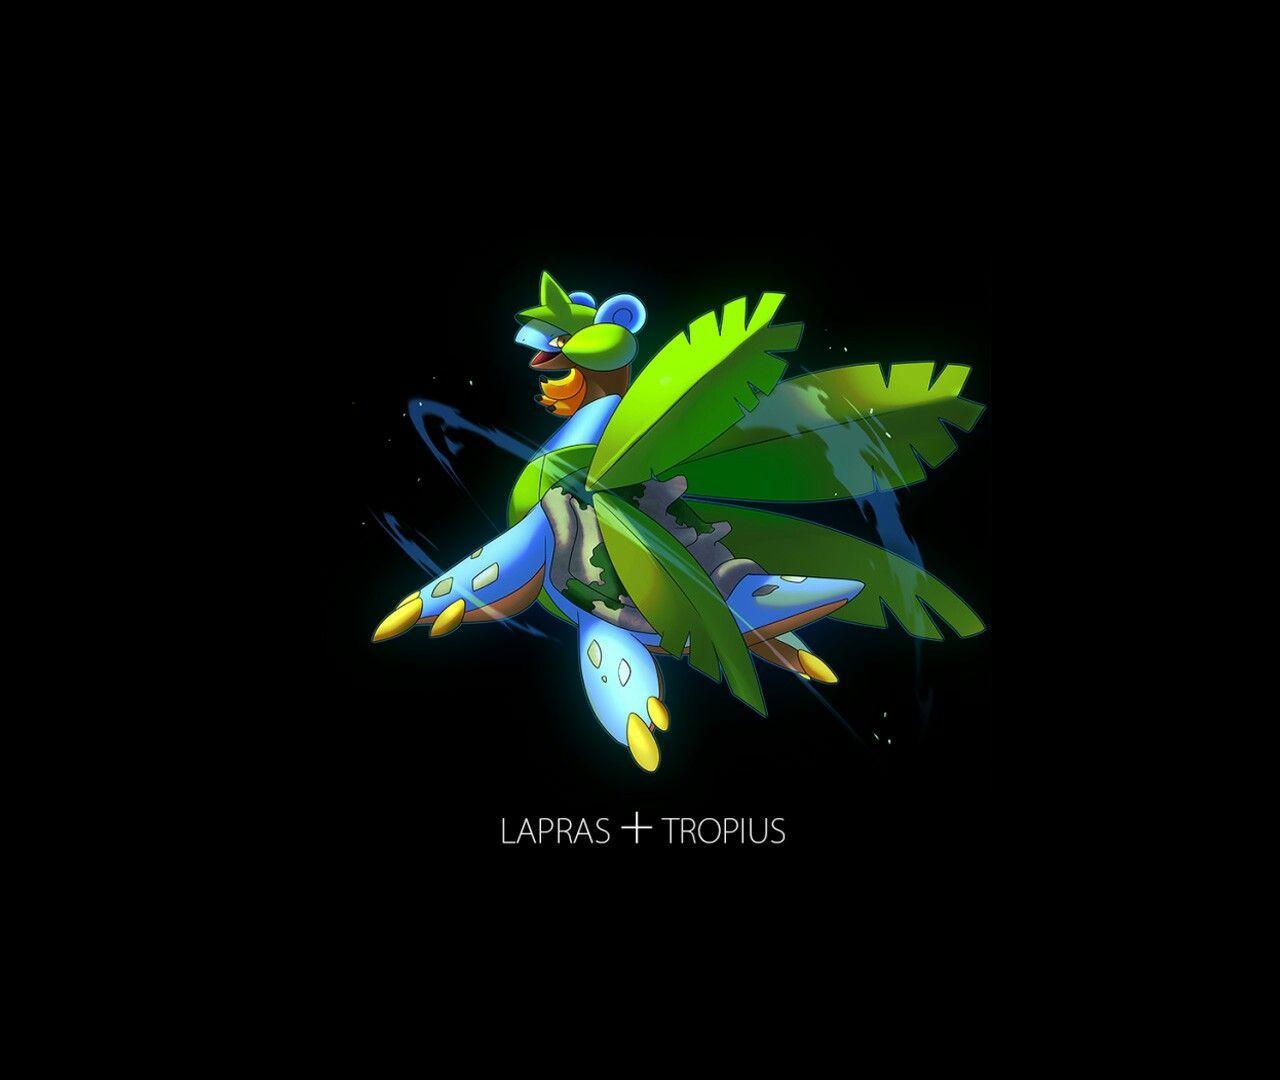 Lapras + Tropius. Pokémon. pokemon Fusion, Pokémon